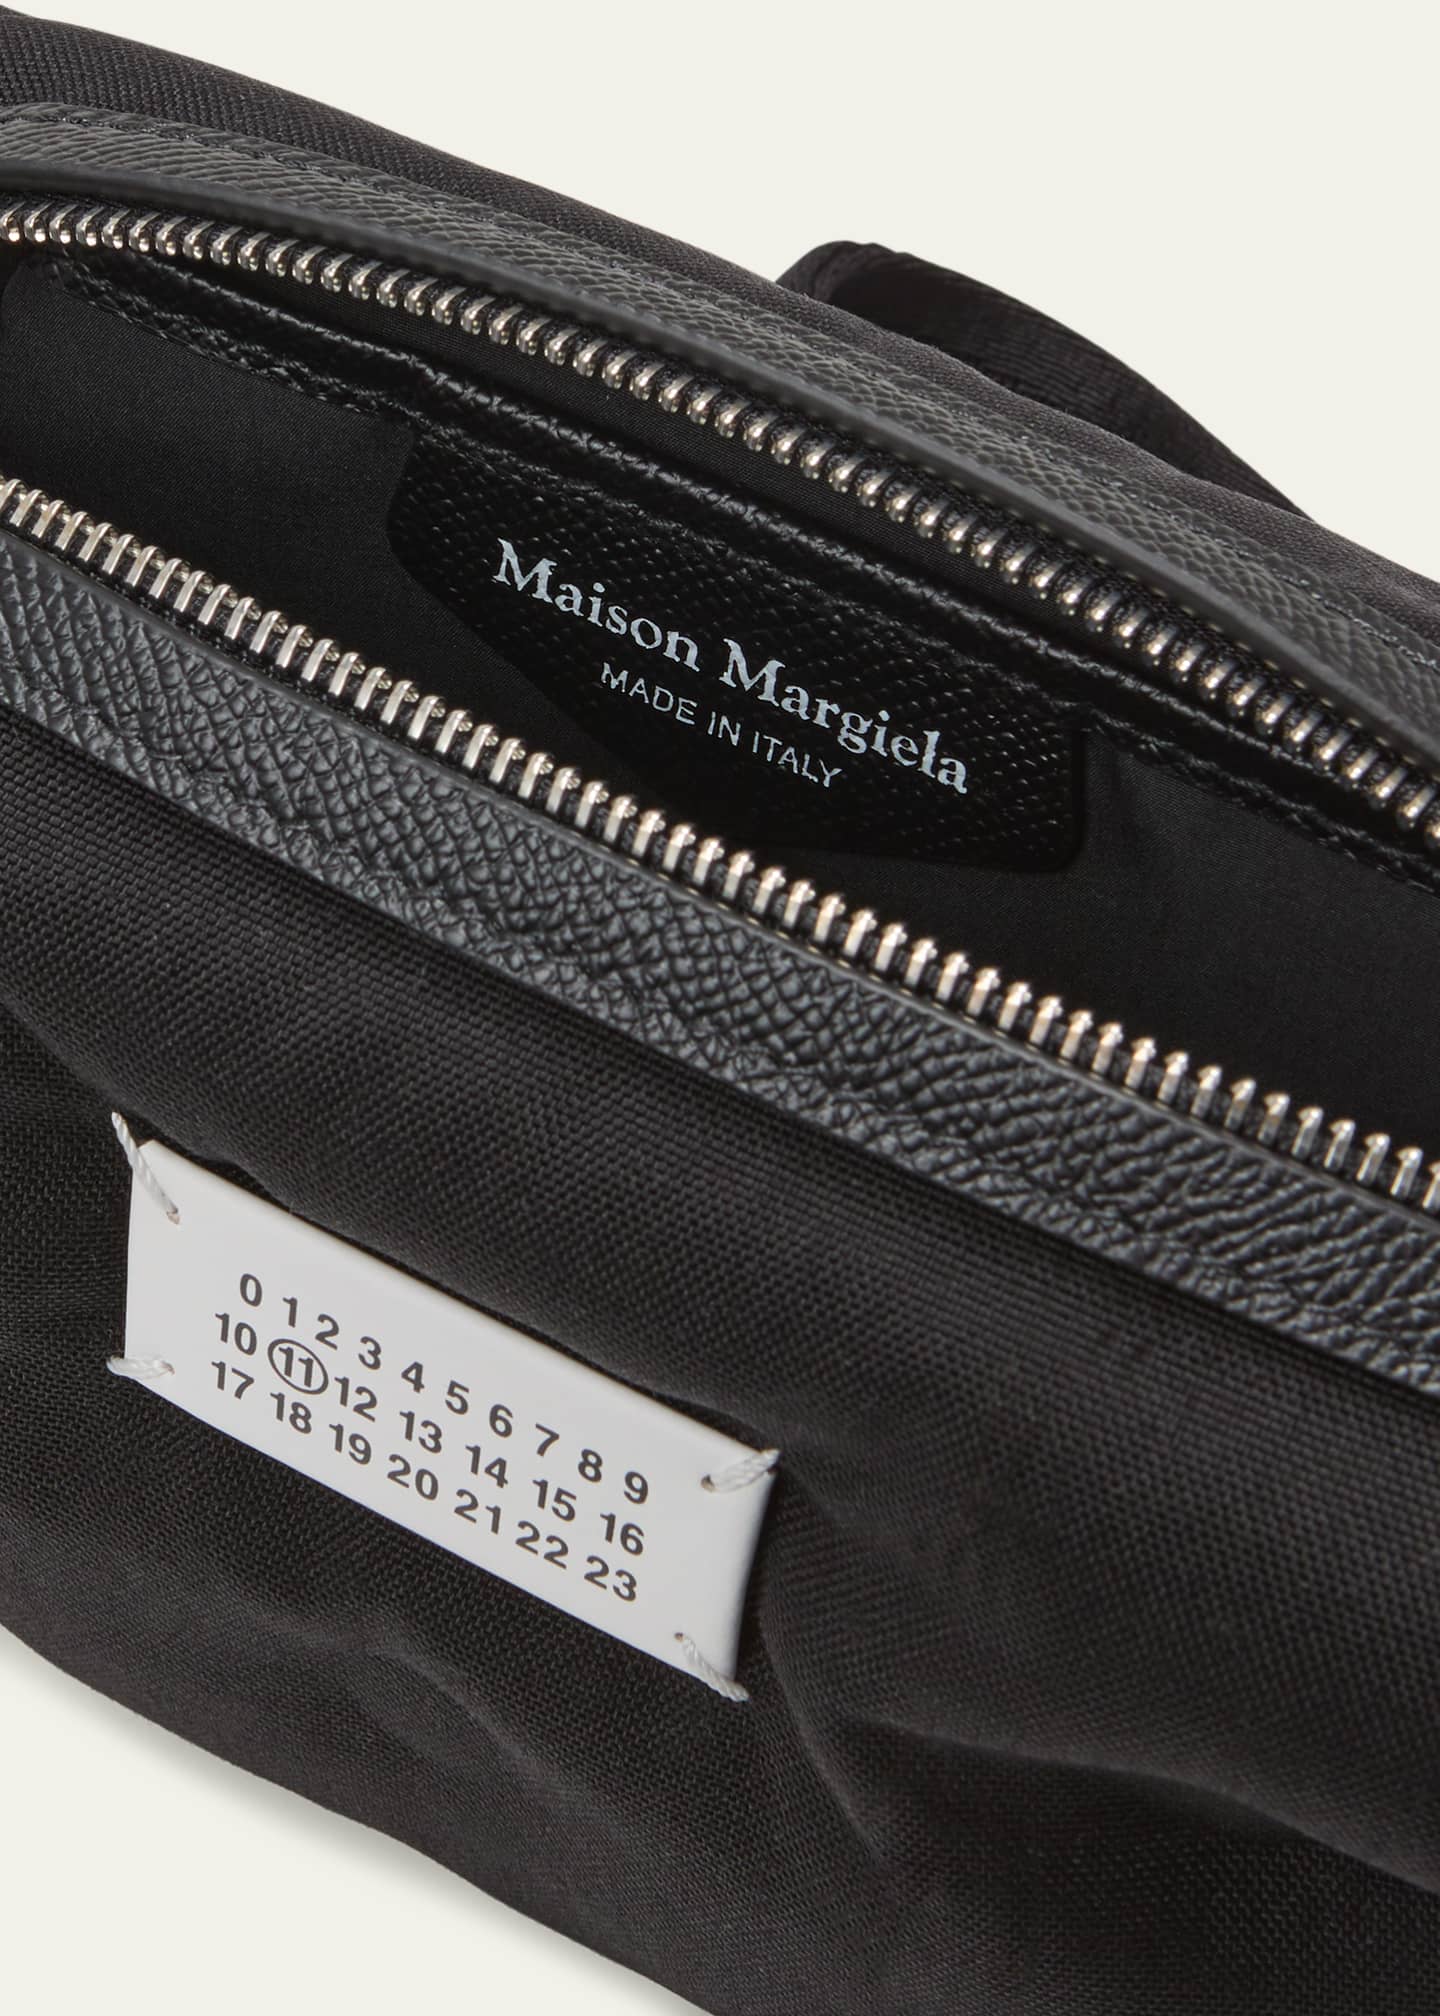 Shop Maison Margiela Glam Slam Casual Style 2WAY Leather Crossbody